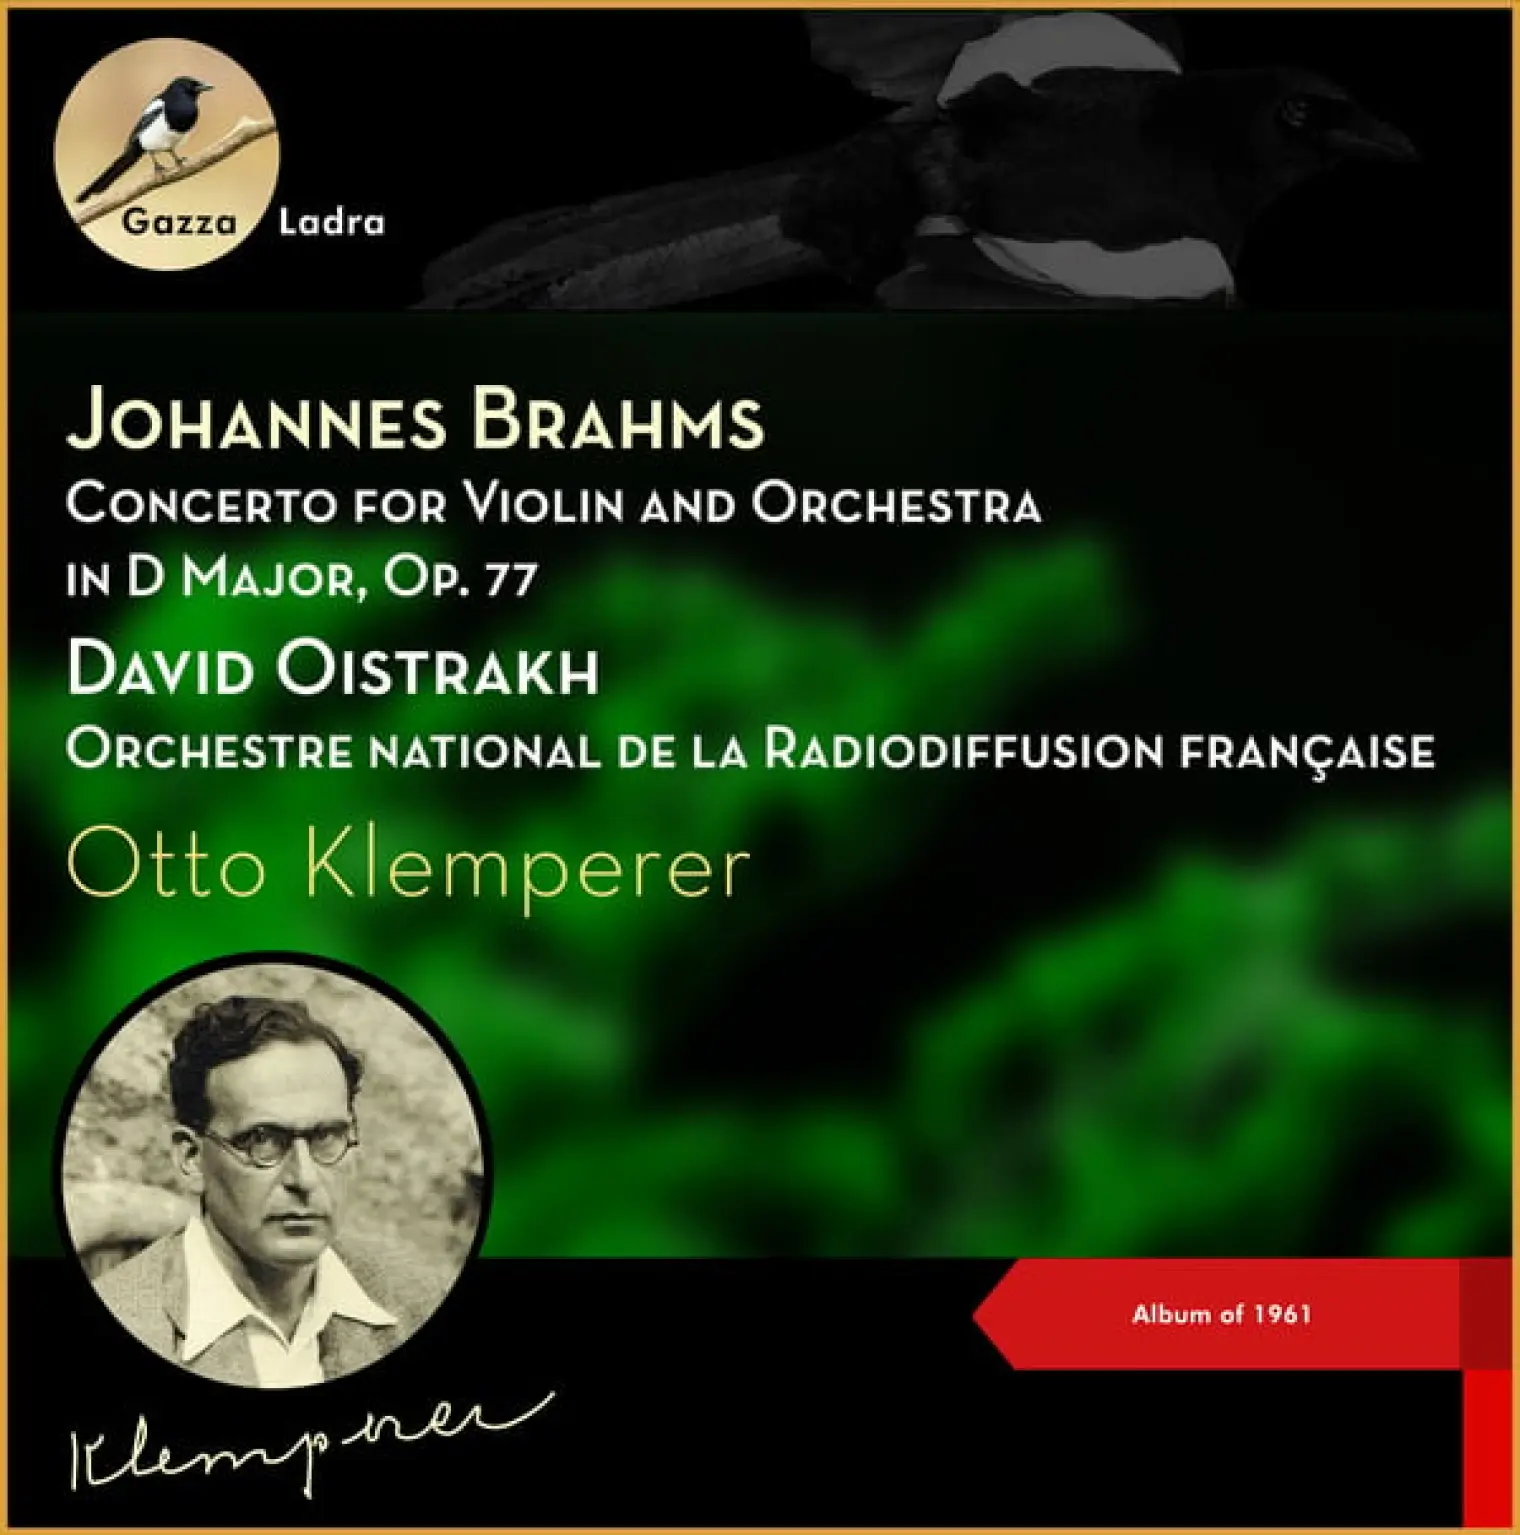 Johannes Brahms: Concerto for Violin and Orchestra in D Major, Op. 77 (Album of 1961) -  David Oistrakh 